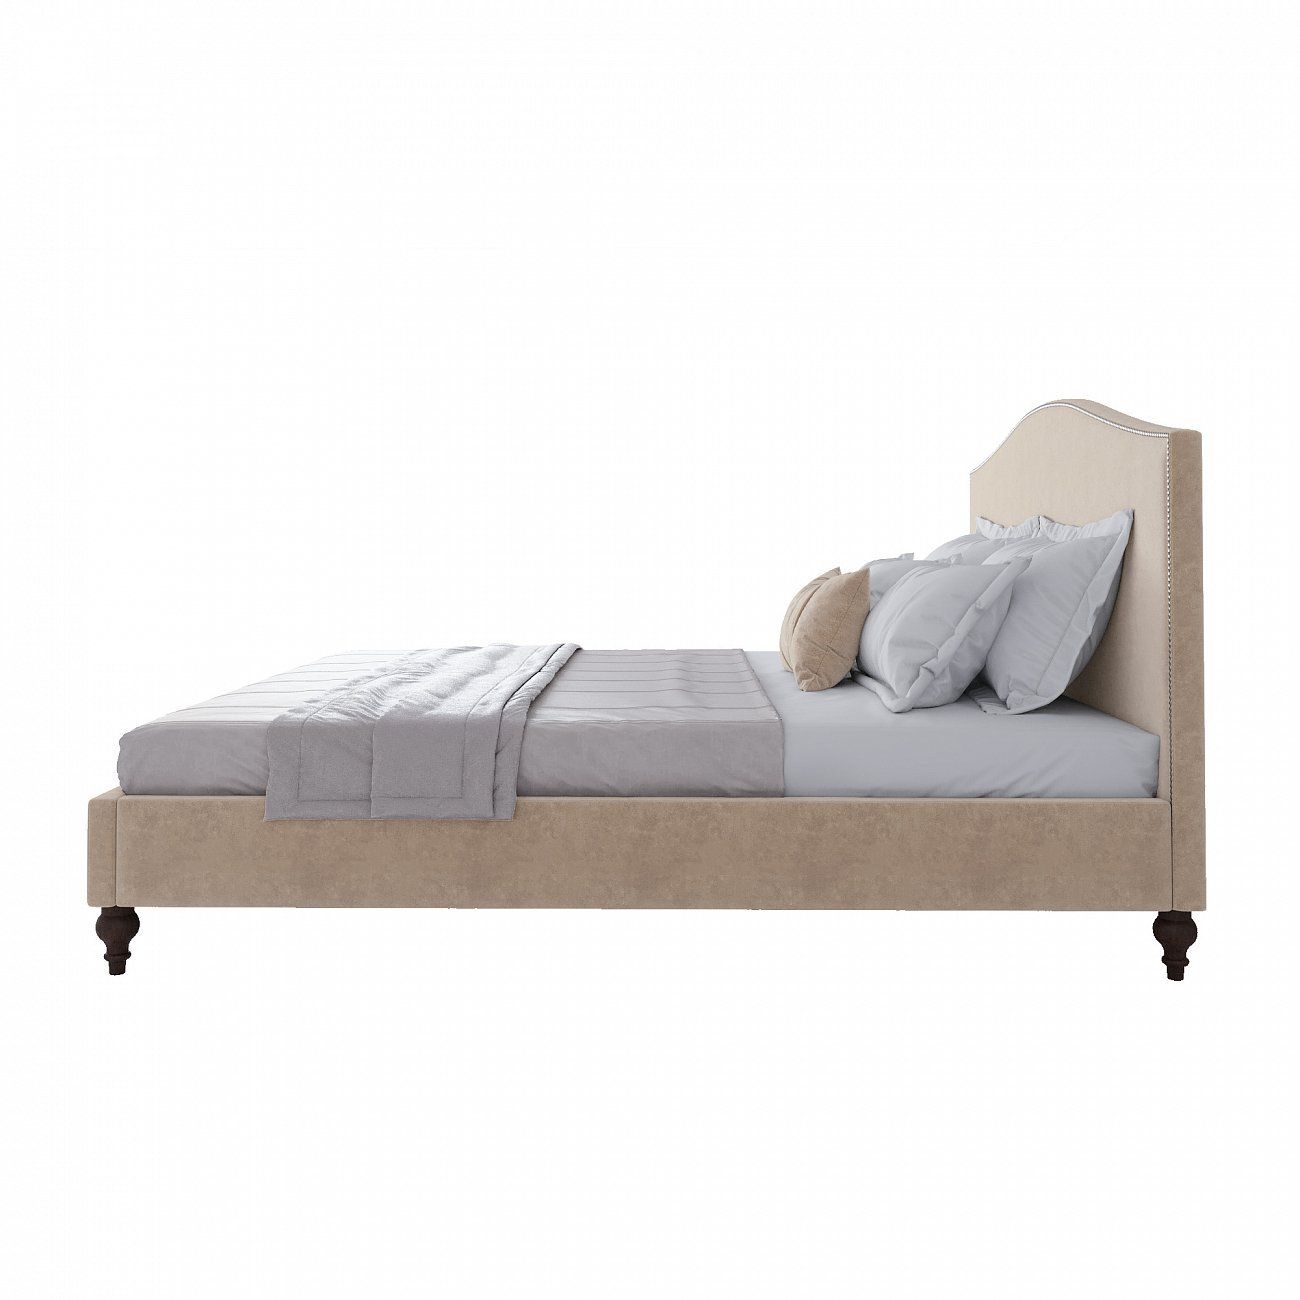 Double bed 180x200 cm beige-pink Fleurie